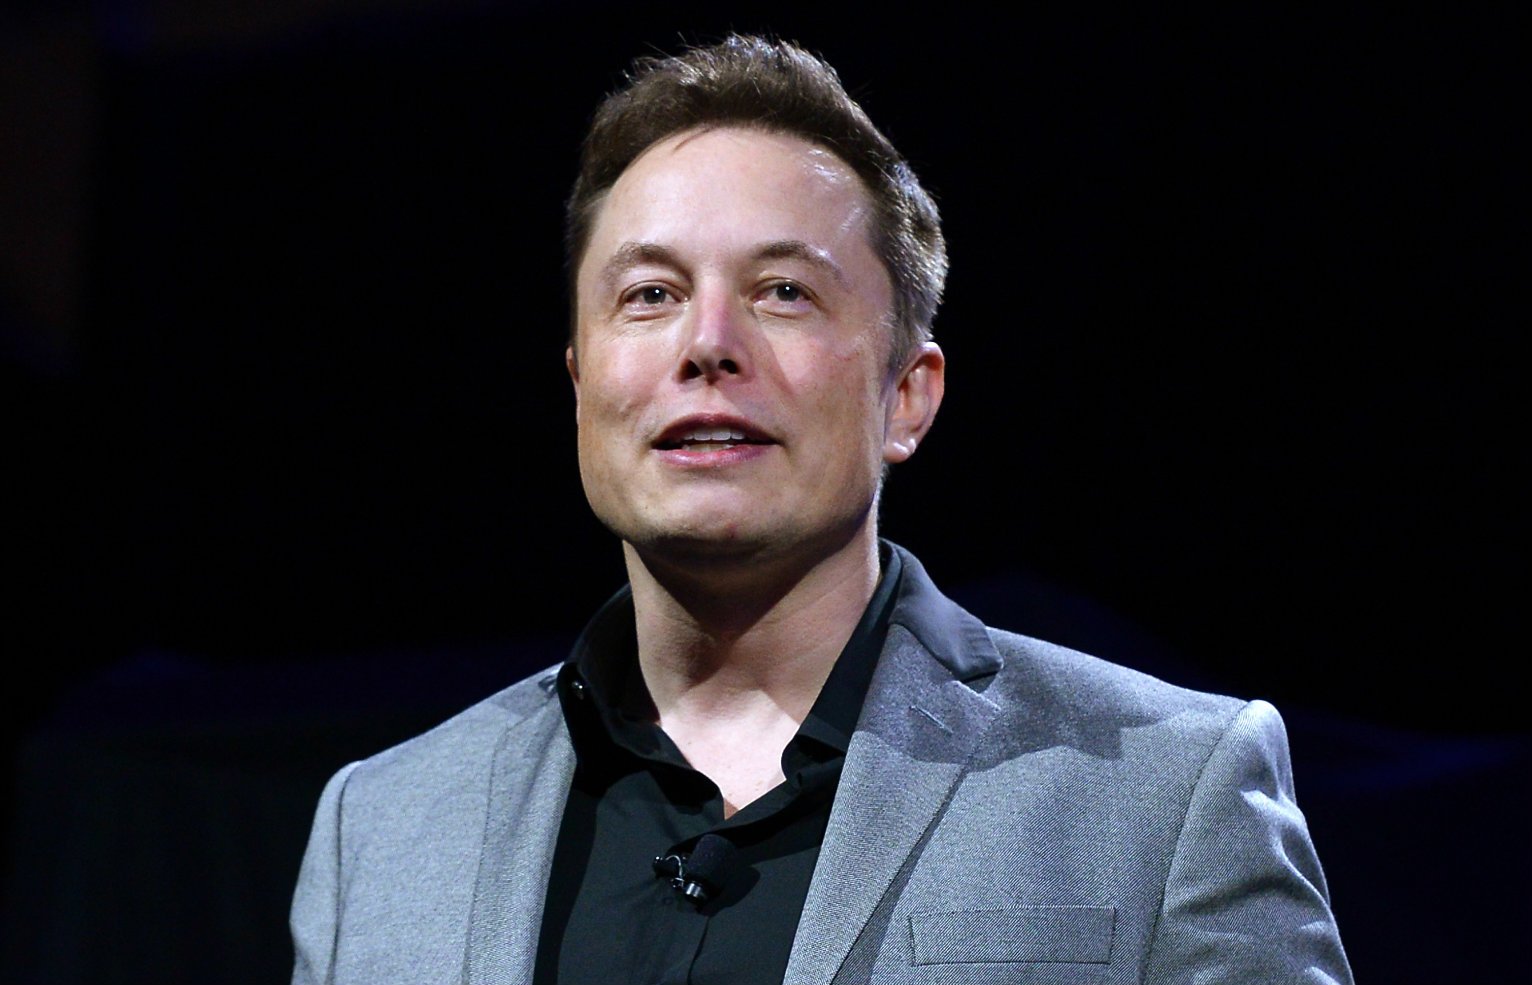  Elon Musk a pierdut și a doua poziție în clasamentul celor mai bogați oameni din lume